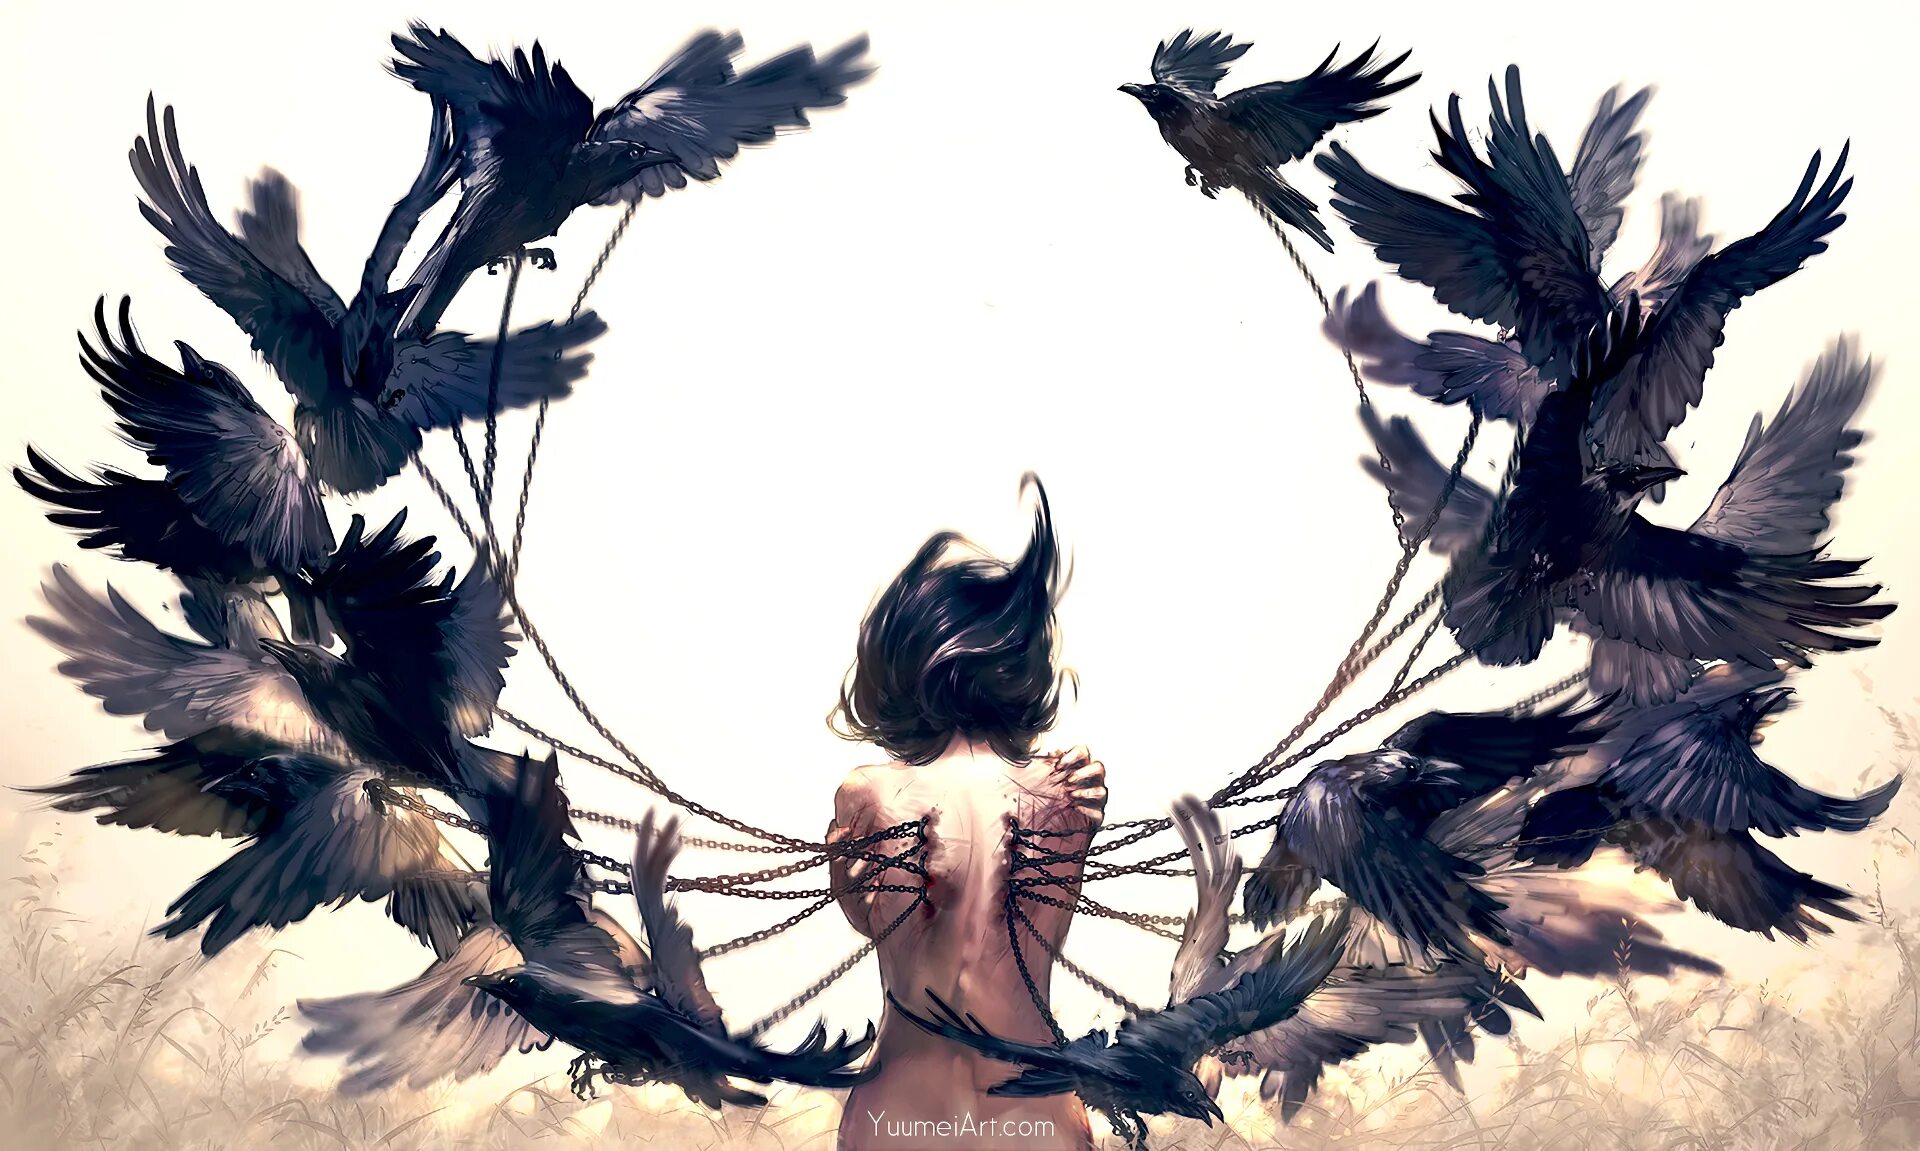 Художница yuumei. Женщина с крыльями. Девушка птица. Девушка птица арт. Читать под крылом ворона